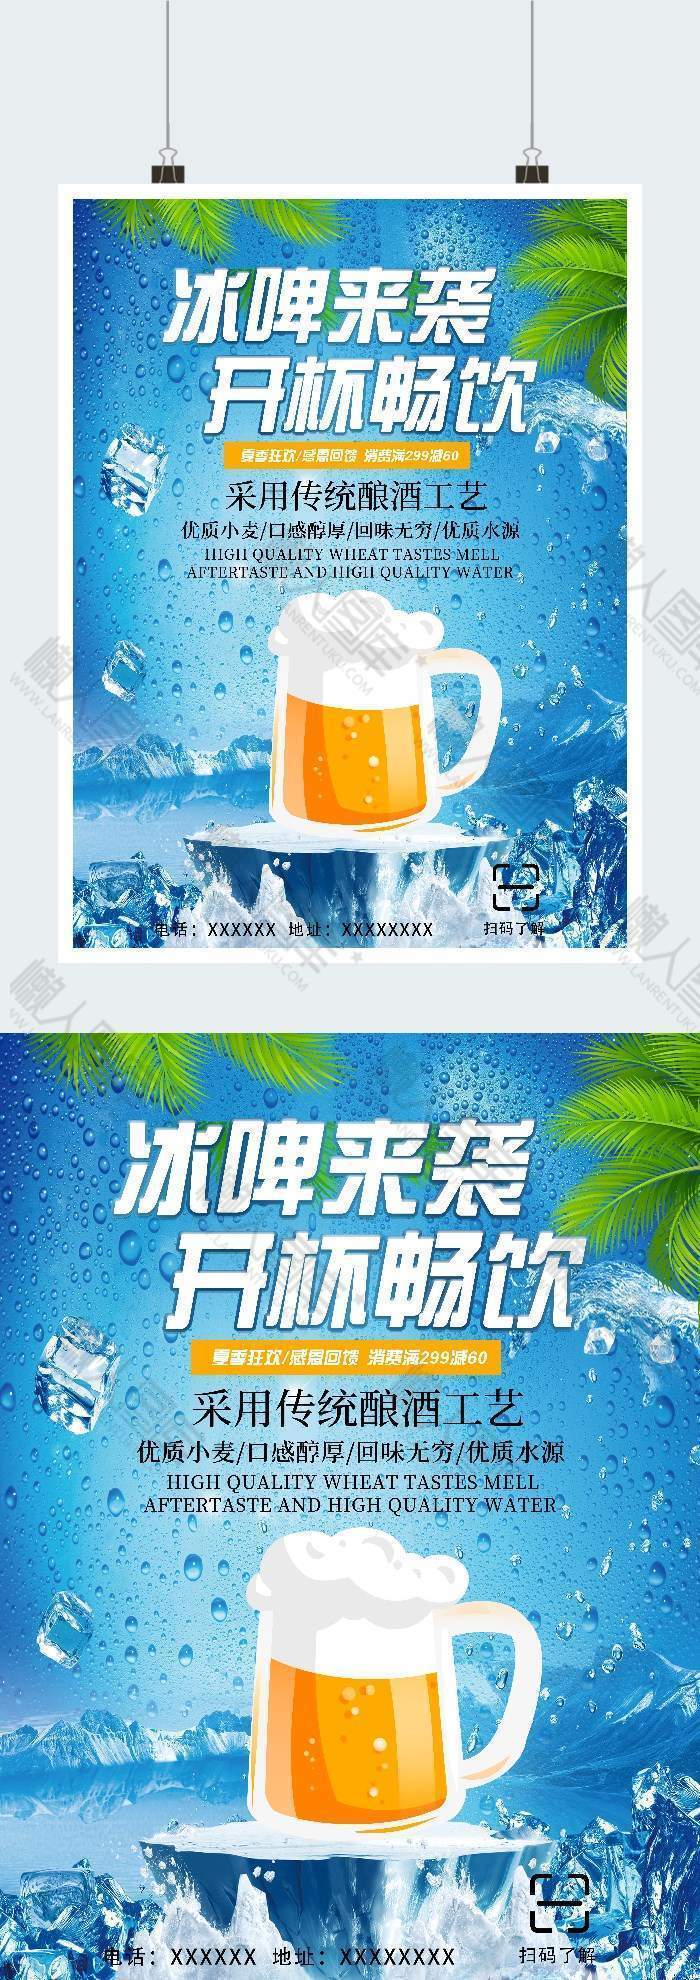 冰啤来袭夏日啤酒节广告平面海报